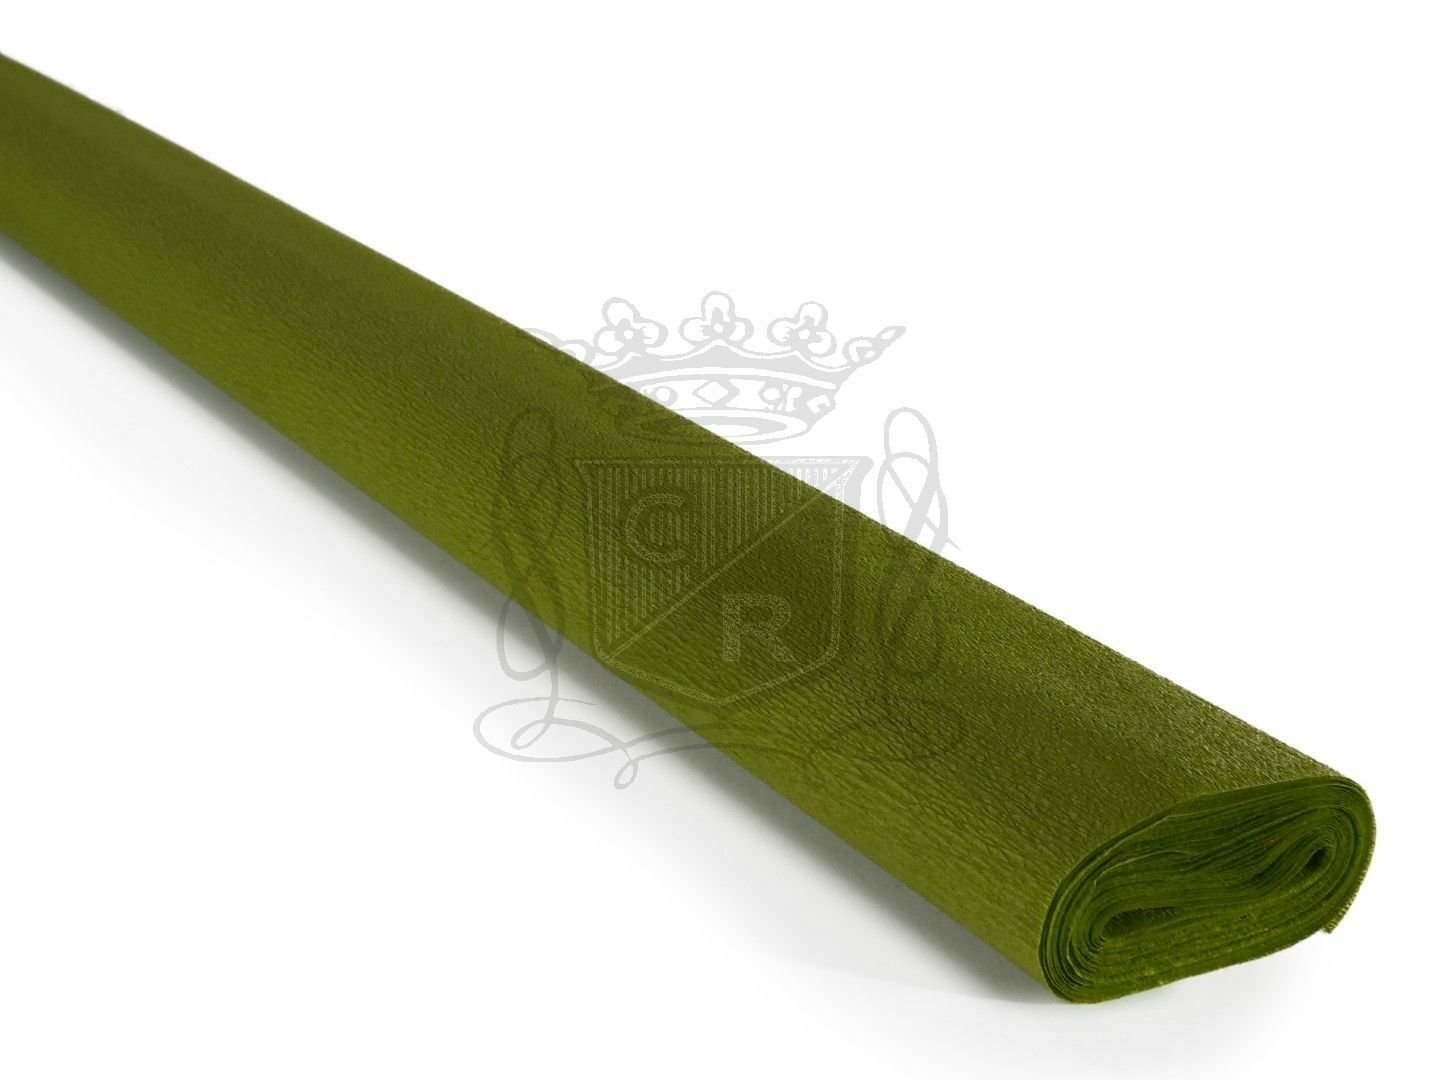 İtalyan Krapon Kağıdı - Musk Green 60 gr. 50*250 cm No:264